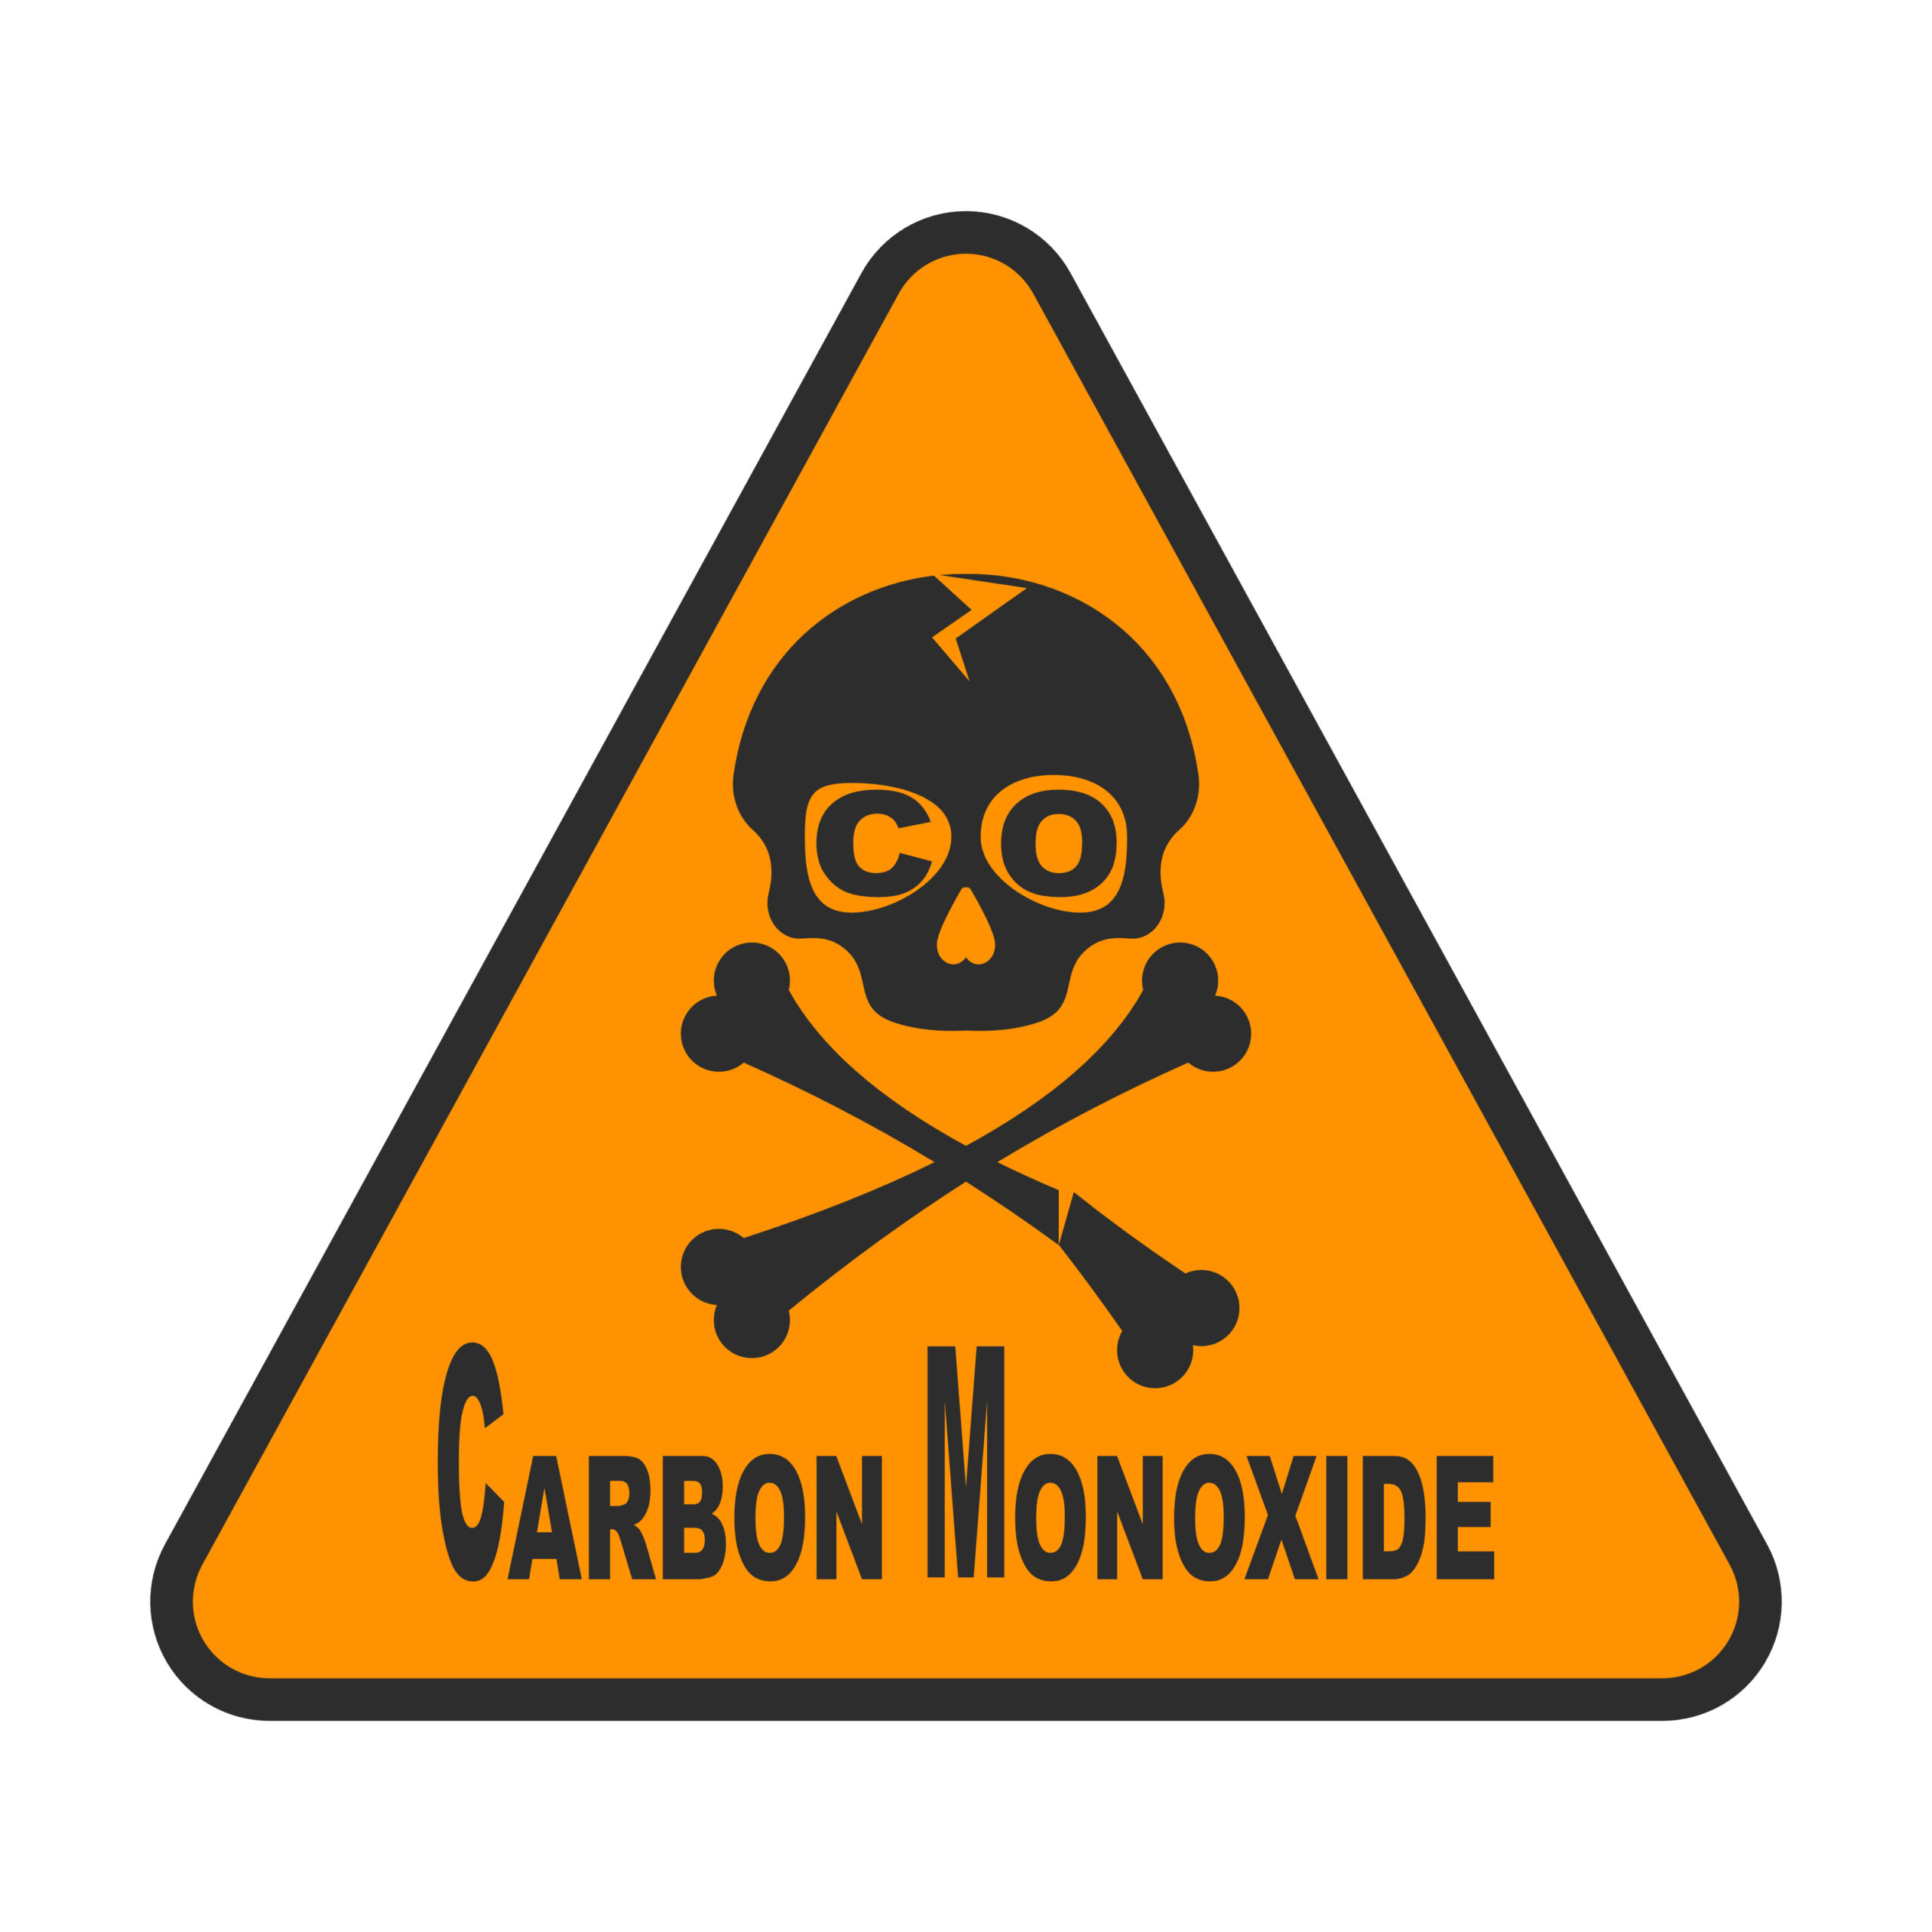 Carbon monoxide is a deadly gas